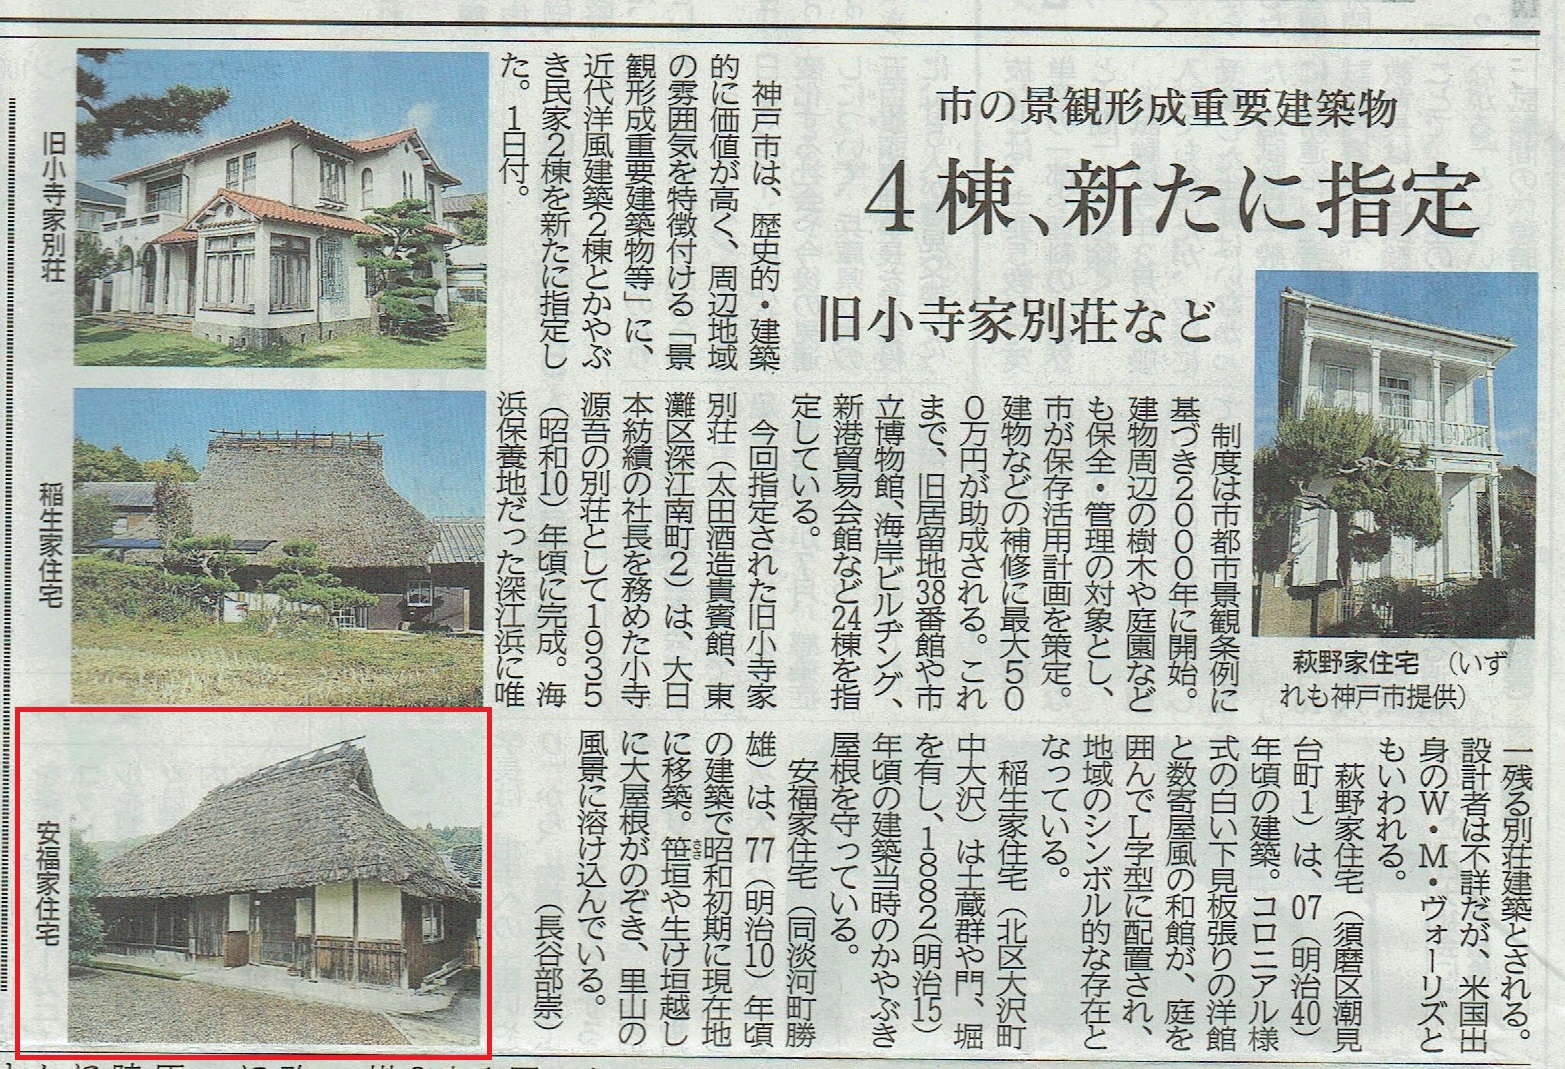 茅葺民家 Ｙ家住宅 が神戸市景観形成重要建築物等に指定されました